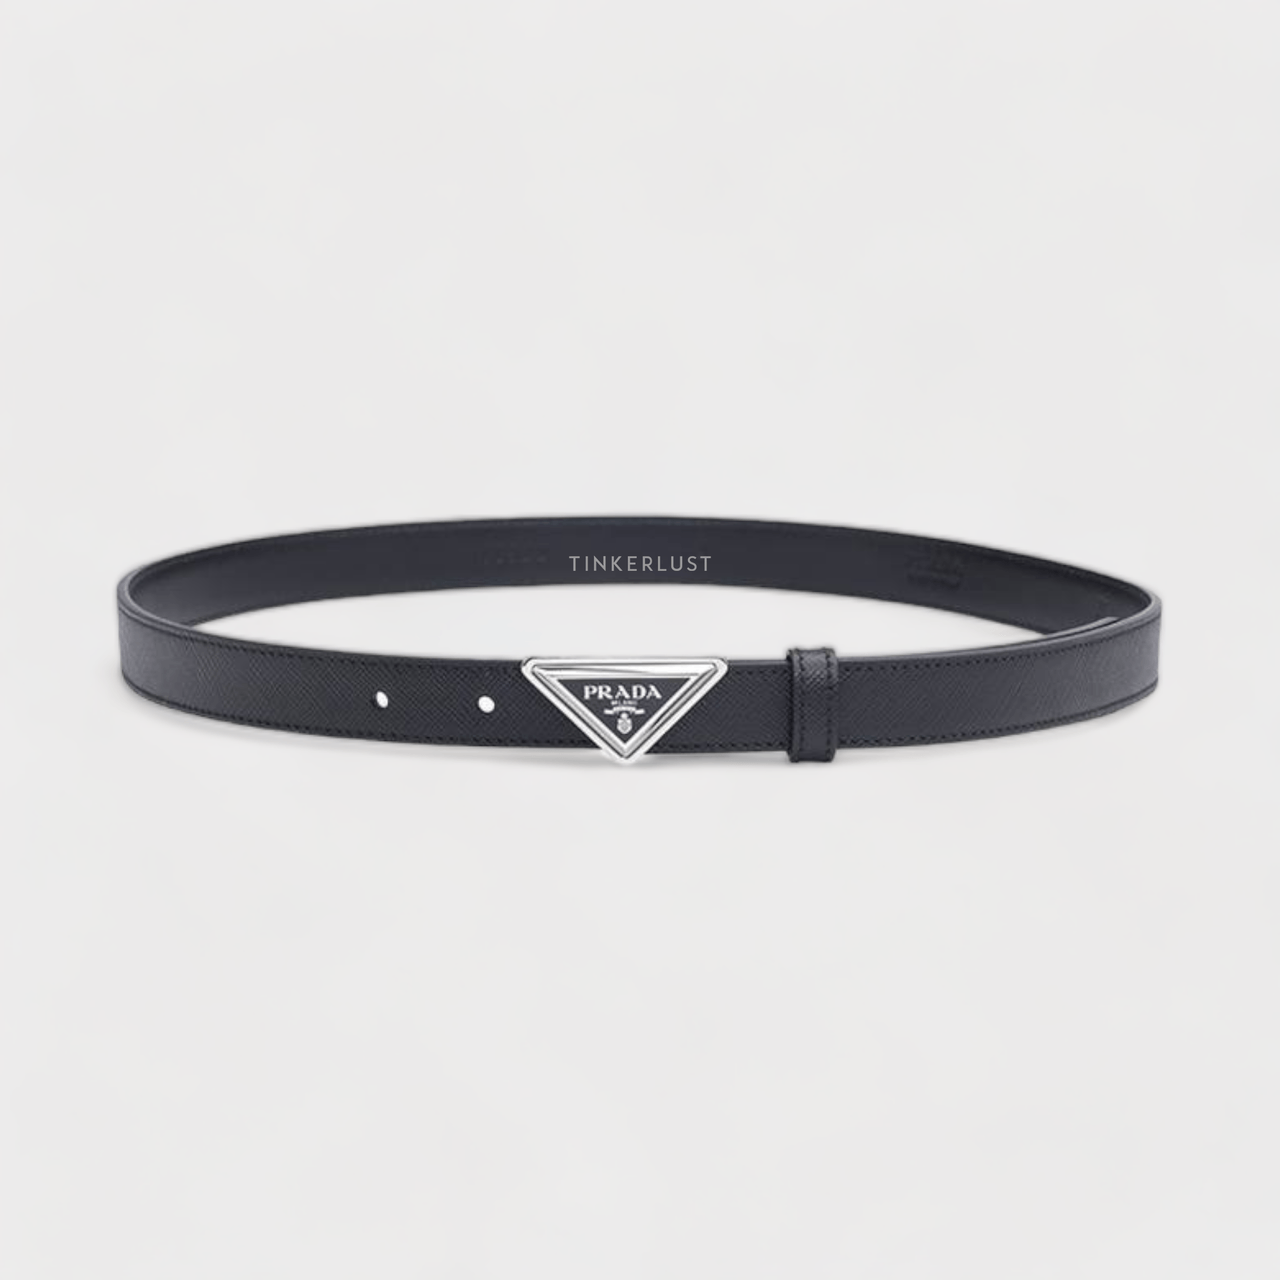 Prada Women Belt 2cm Black Saffiano Leather SHW with Triangular Logo Buckle